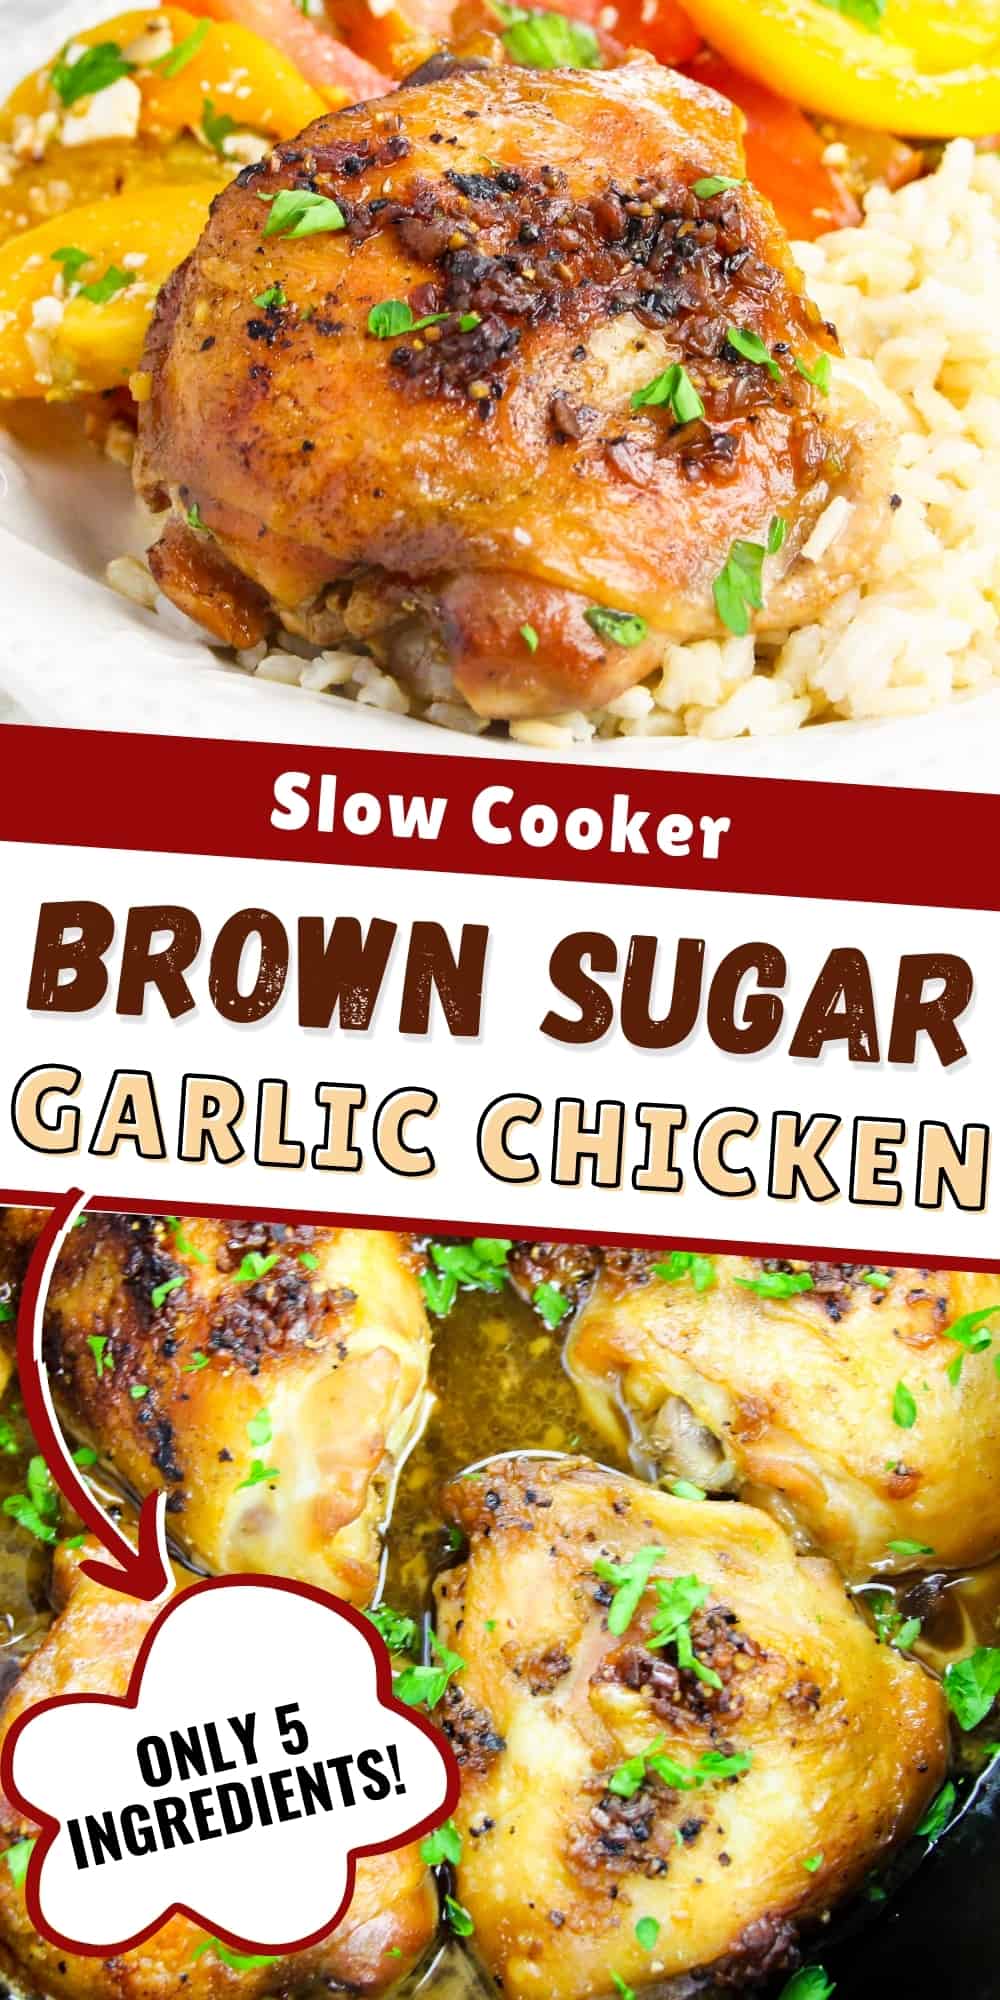 Slow Cooker Brown Sugar Garlic Chicken, Only 5 Ingredients